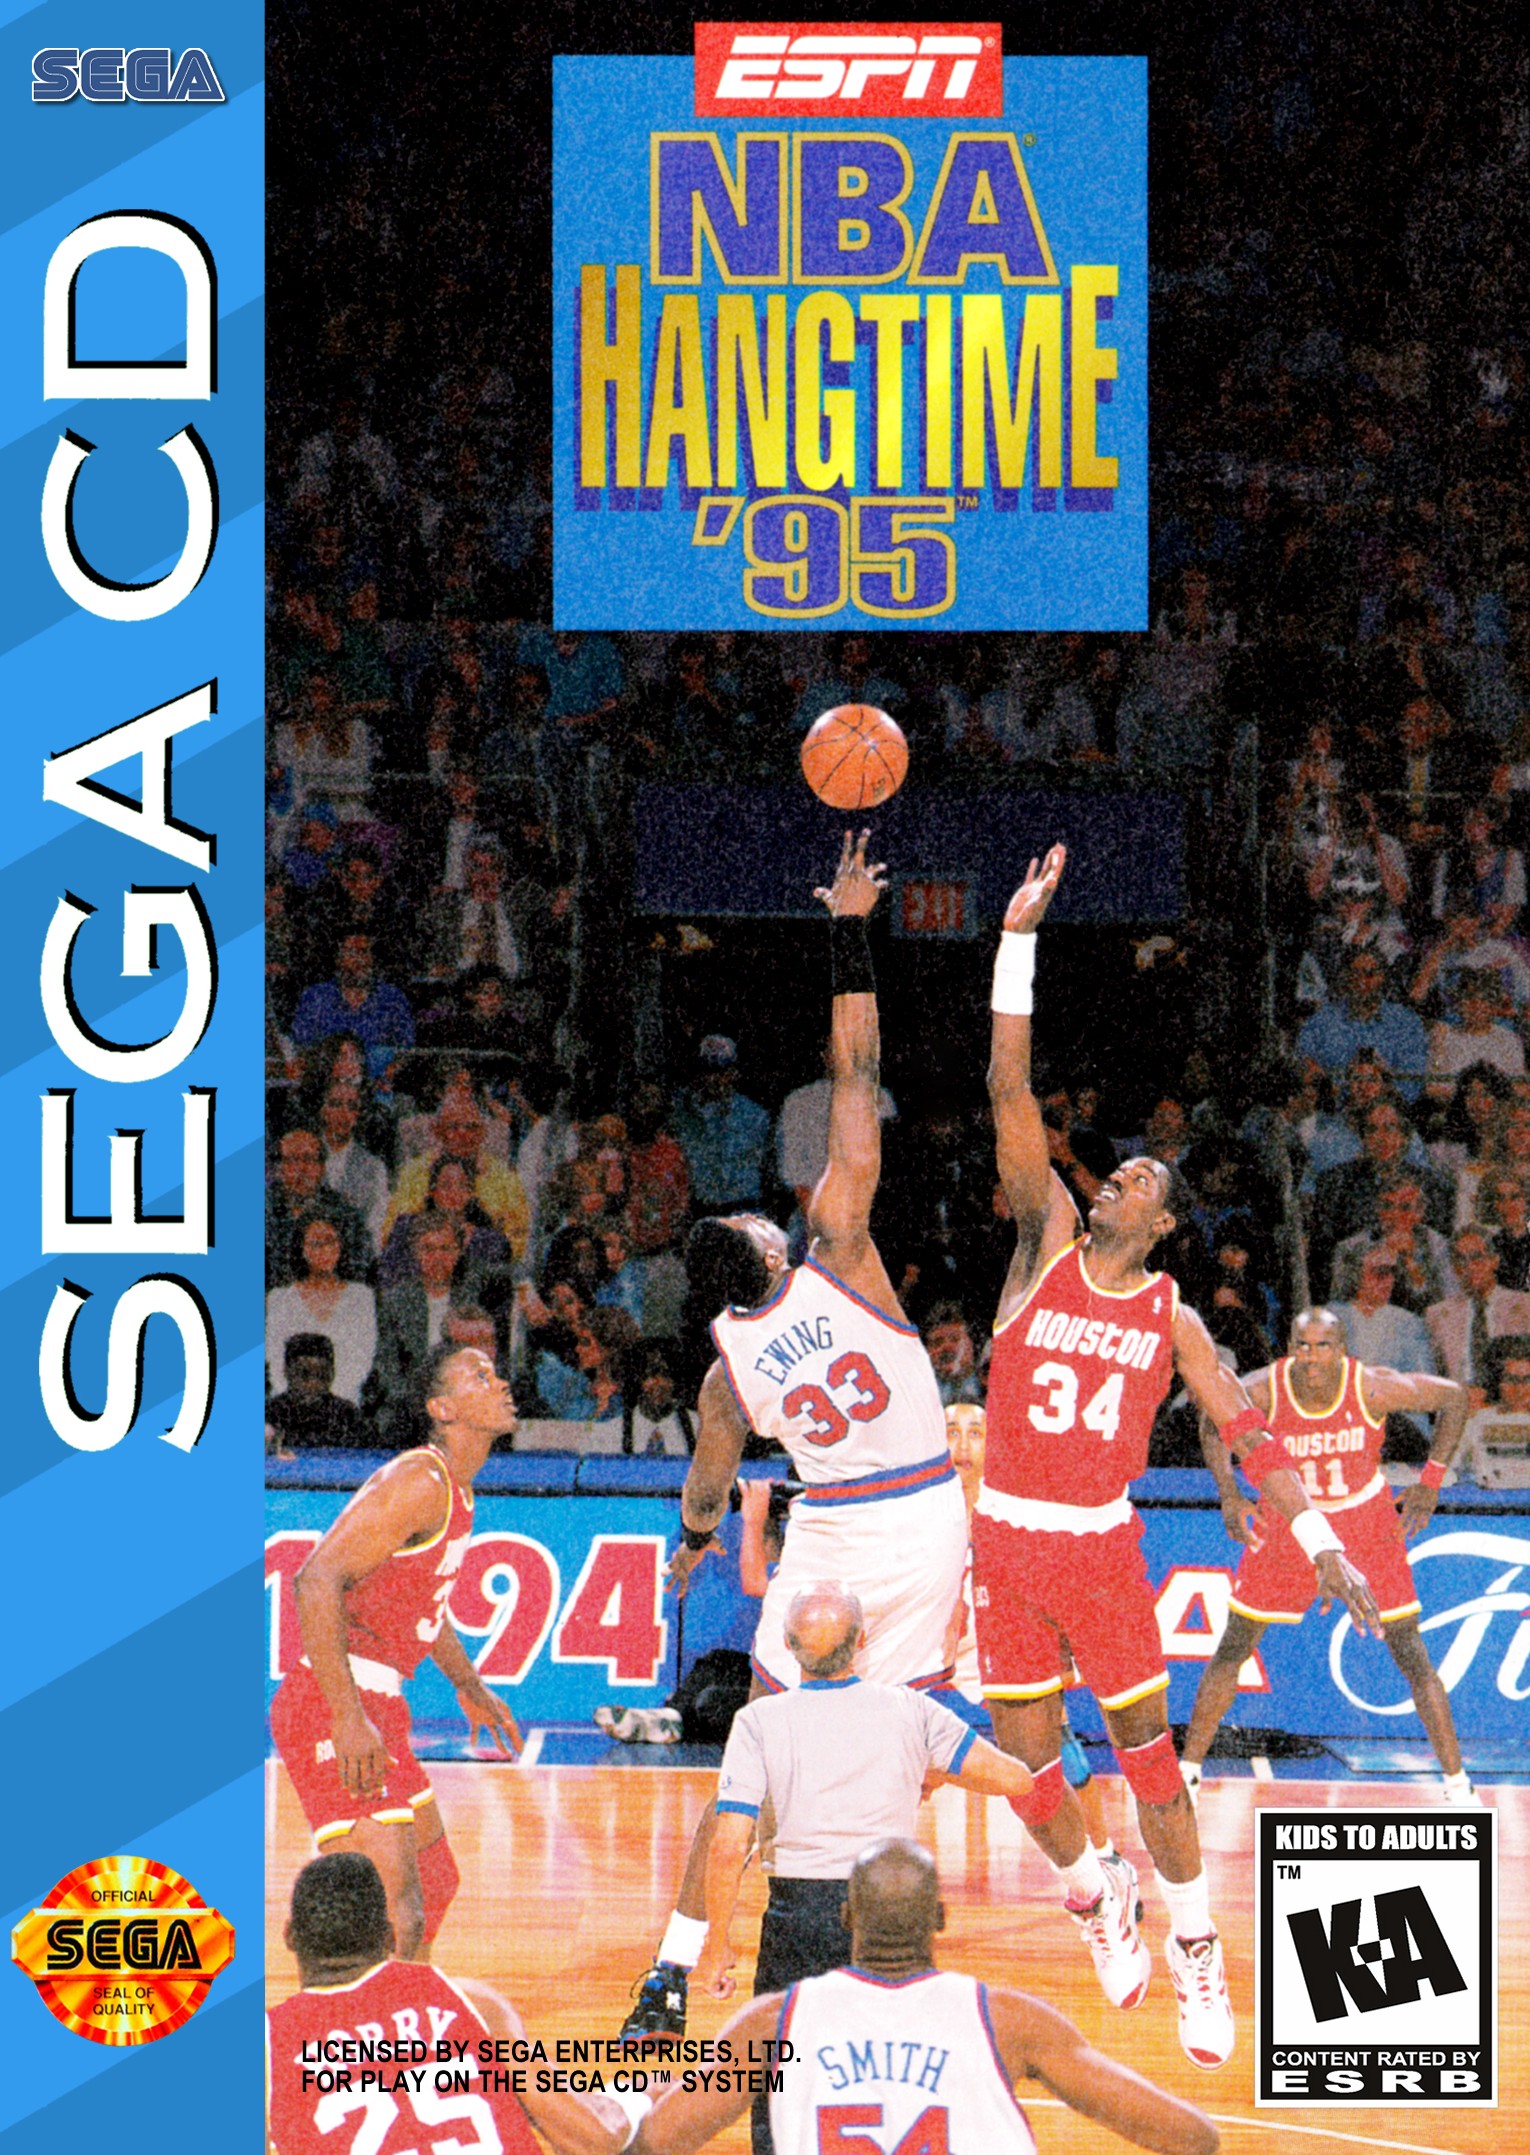 'ESPN: NBA Hangtime - '95'